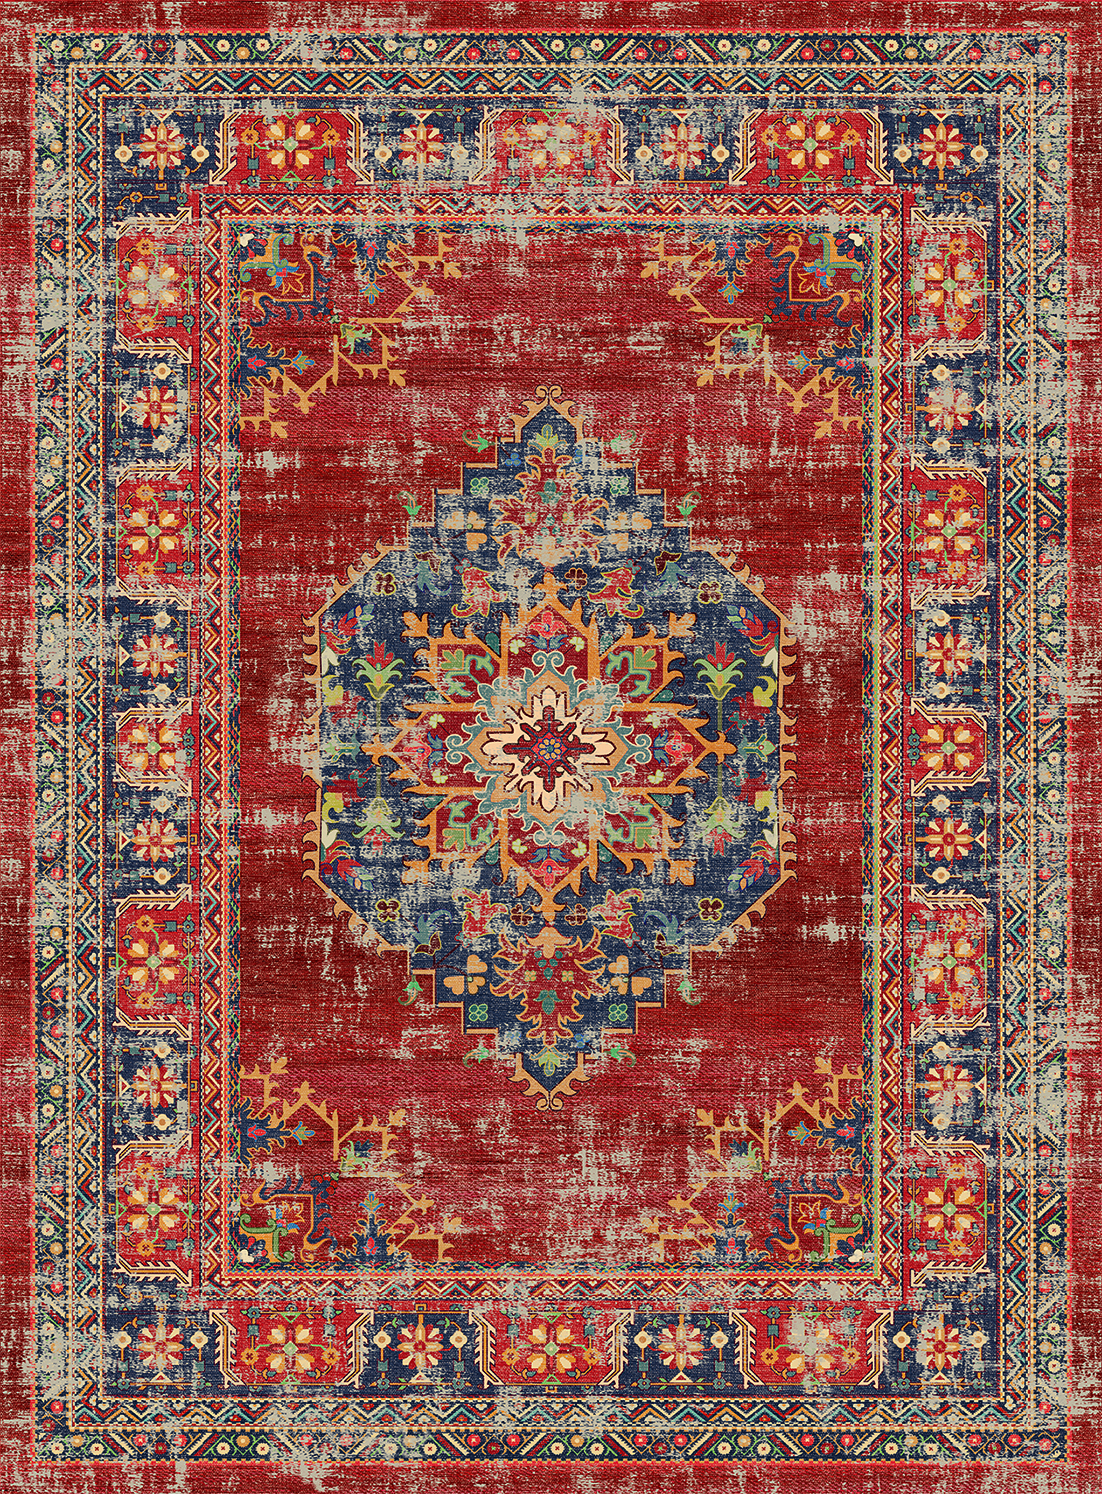 Wilton rug - Soussi (red/multi)